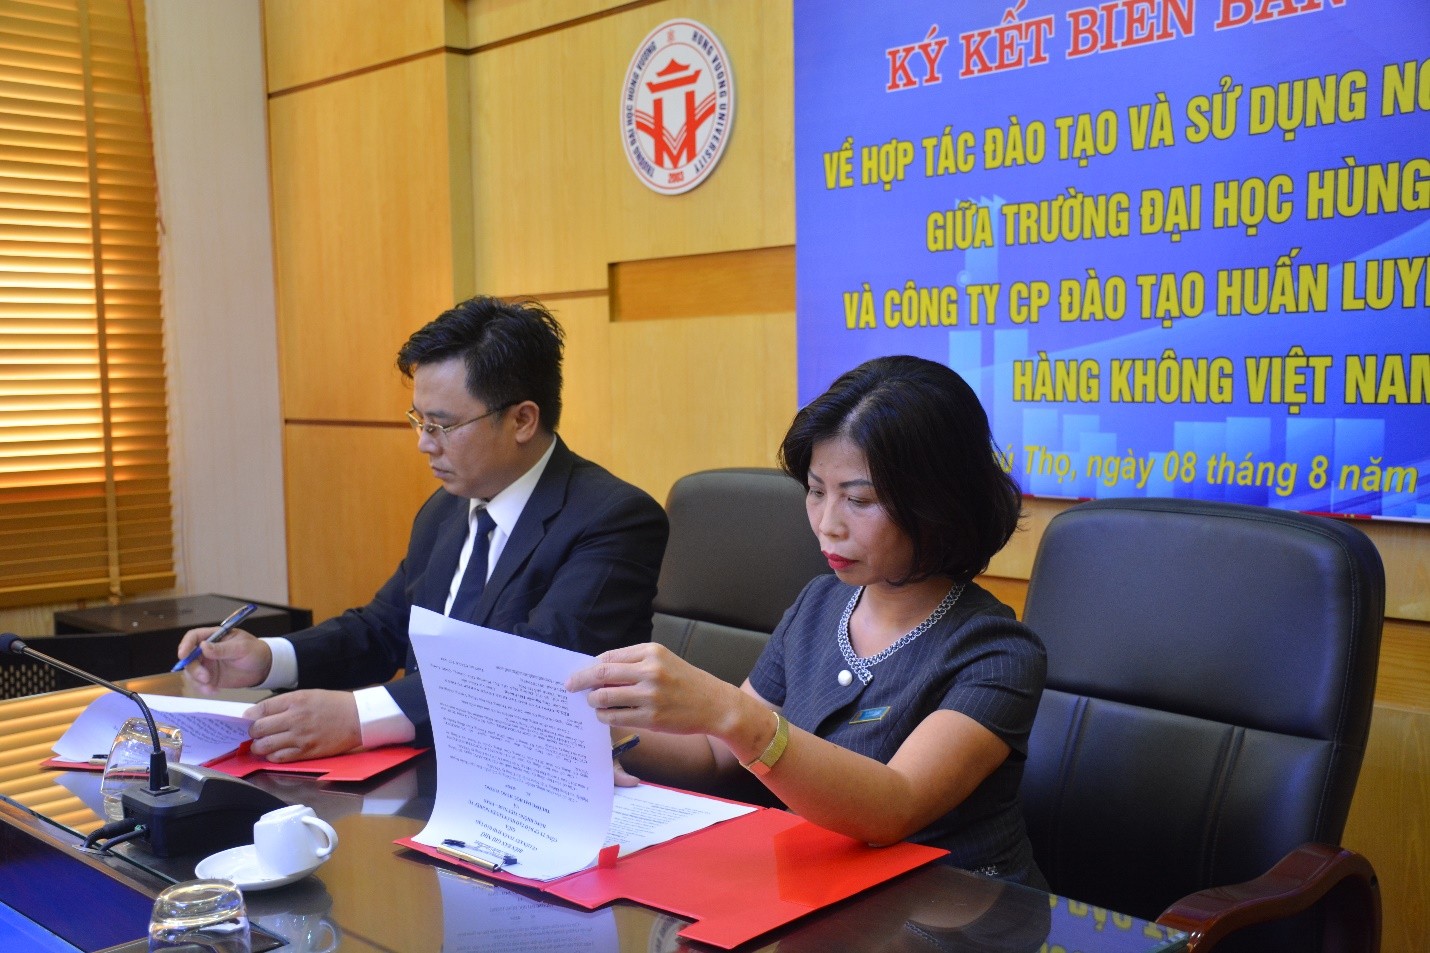 TLễ ký biên bản ghi nhớ hợp tác giữa Trường Đại học Hùng Vương và Công ty cổ phần đào tạo huấn luyện nghiệp vụ hàng không Việt Nam